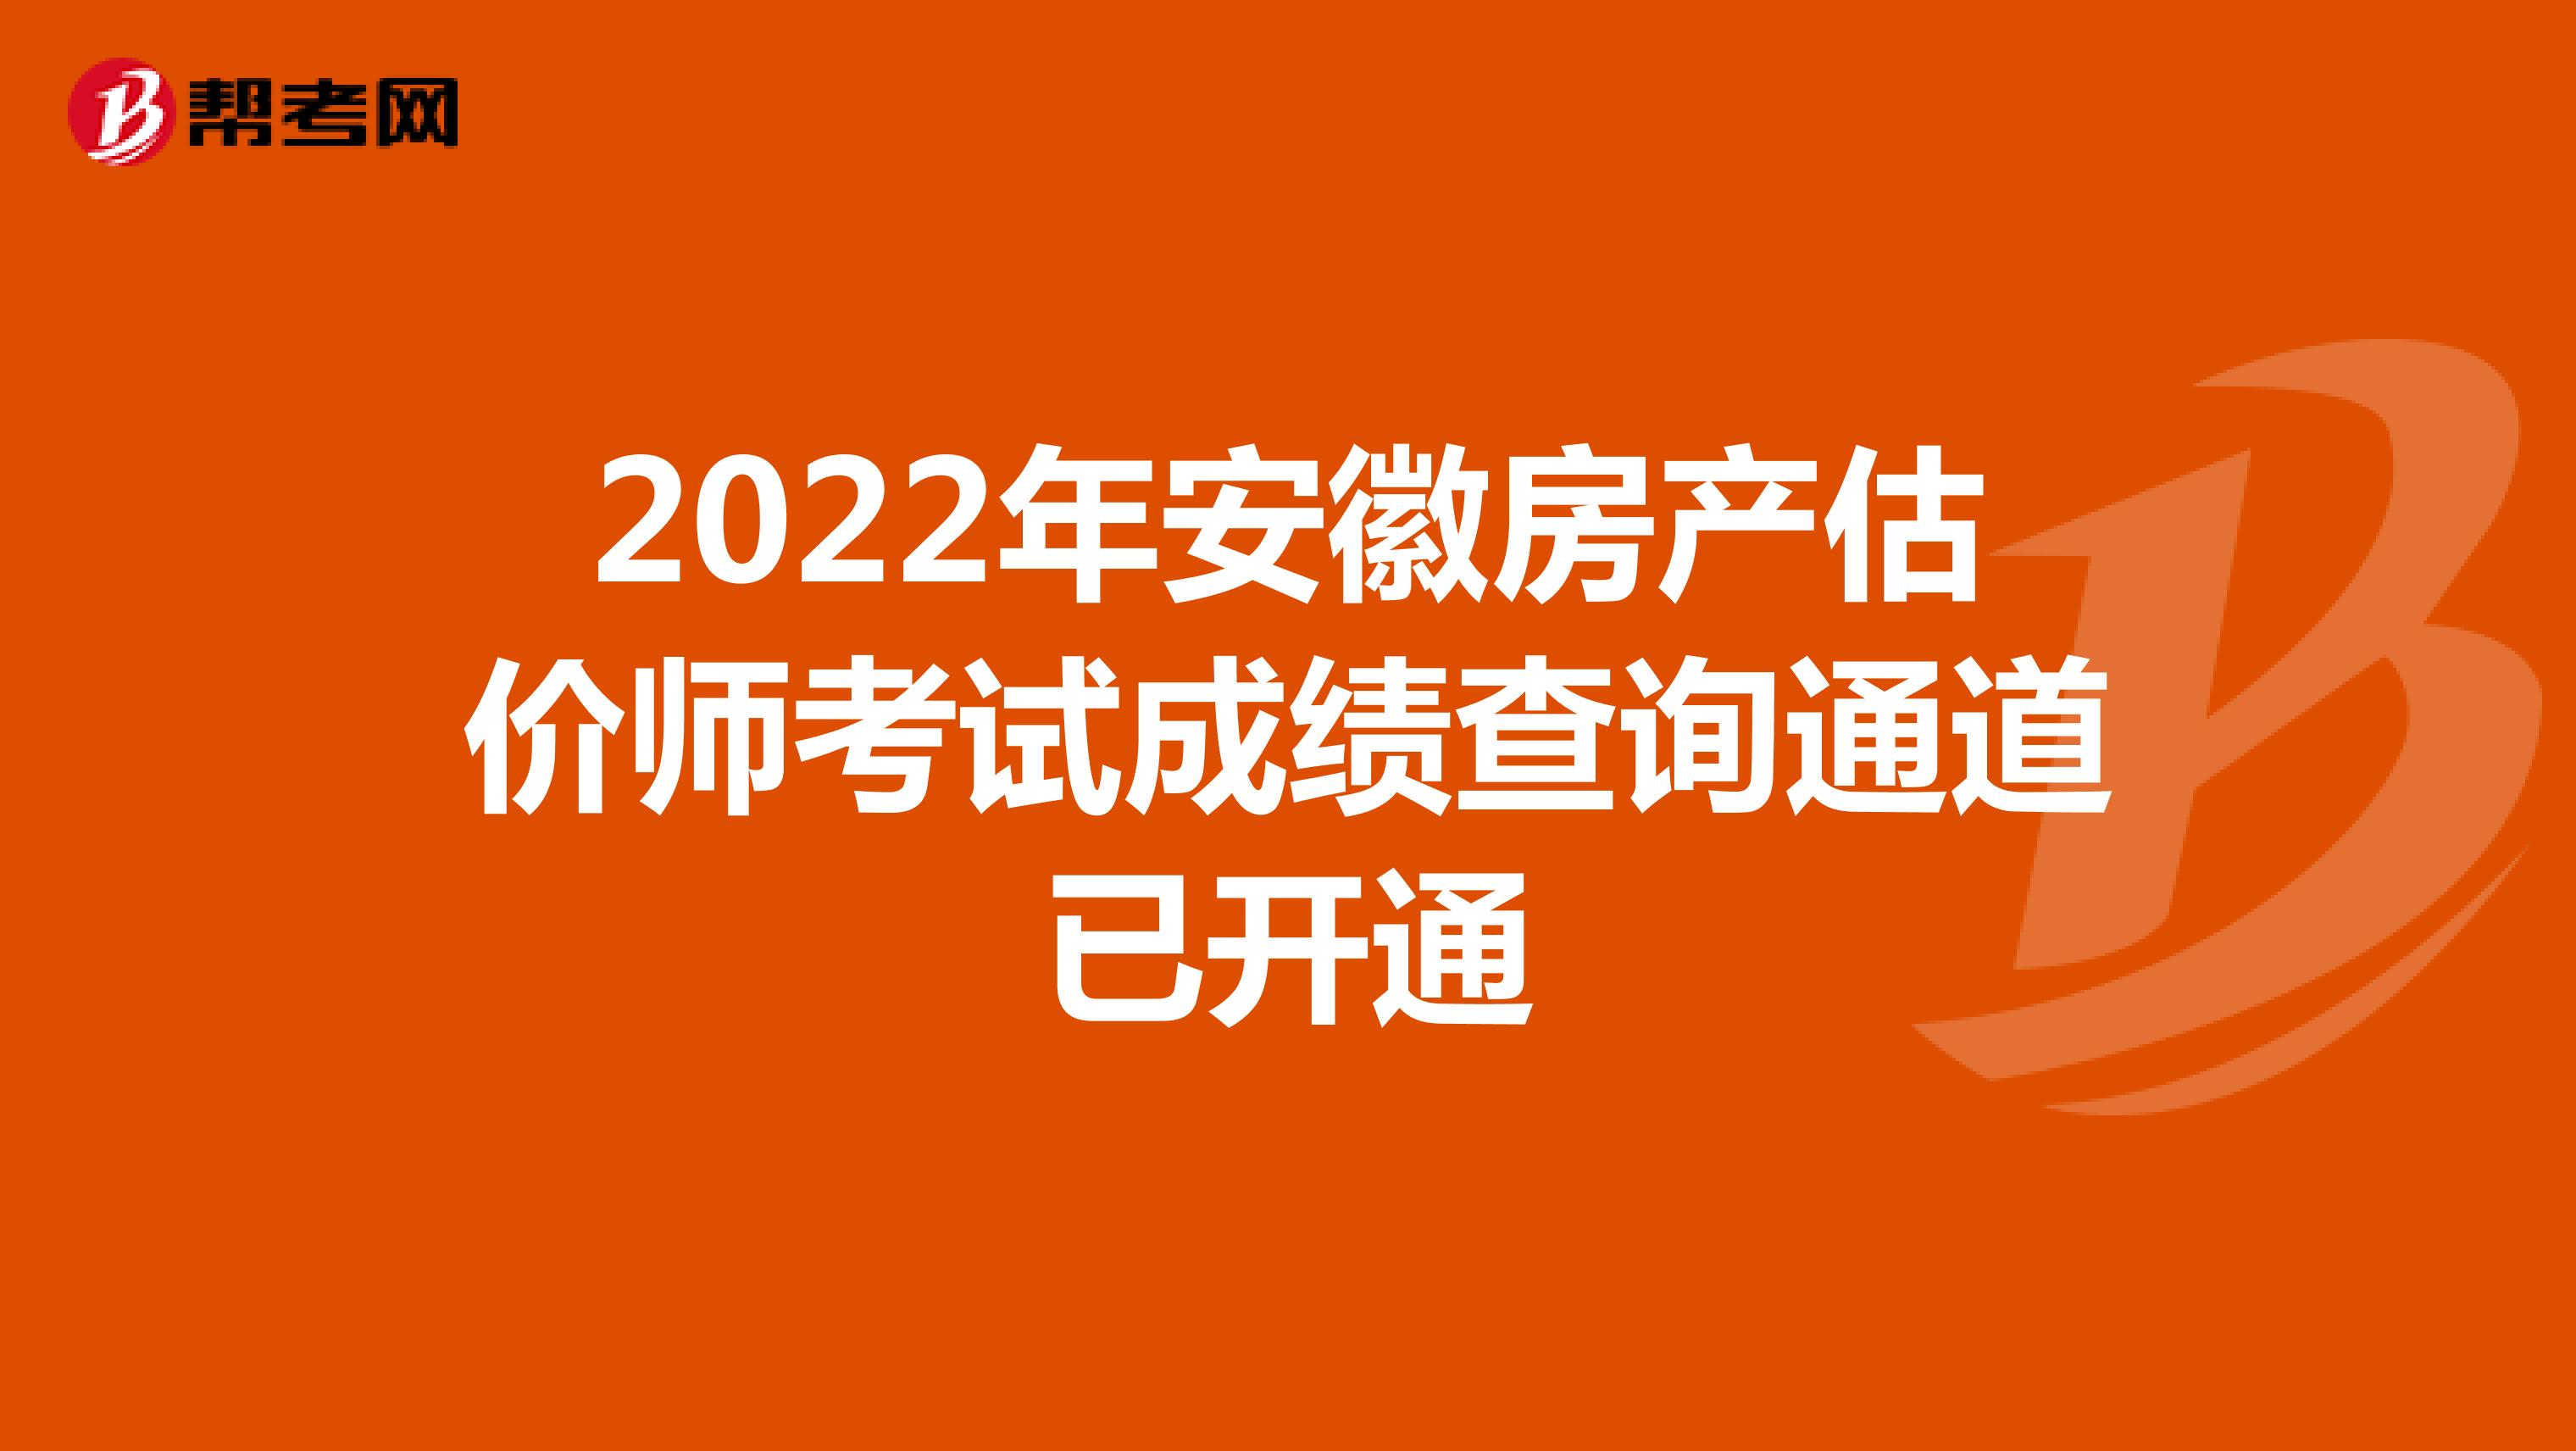 2022年安徽房产估价师考试成绩查询通道已开通